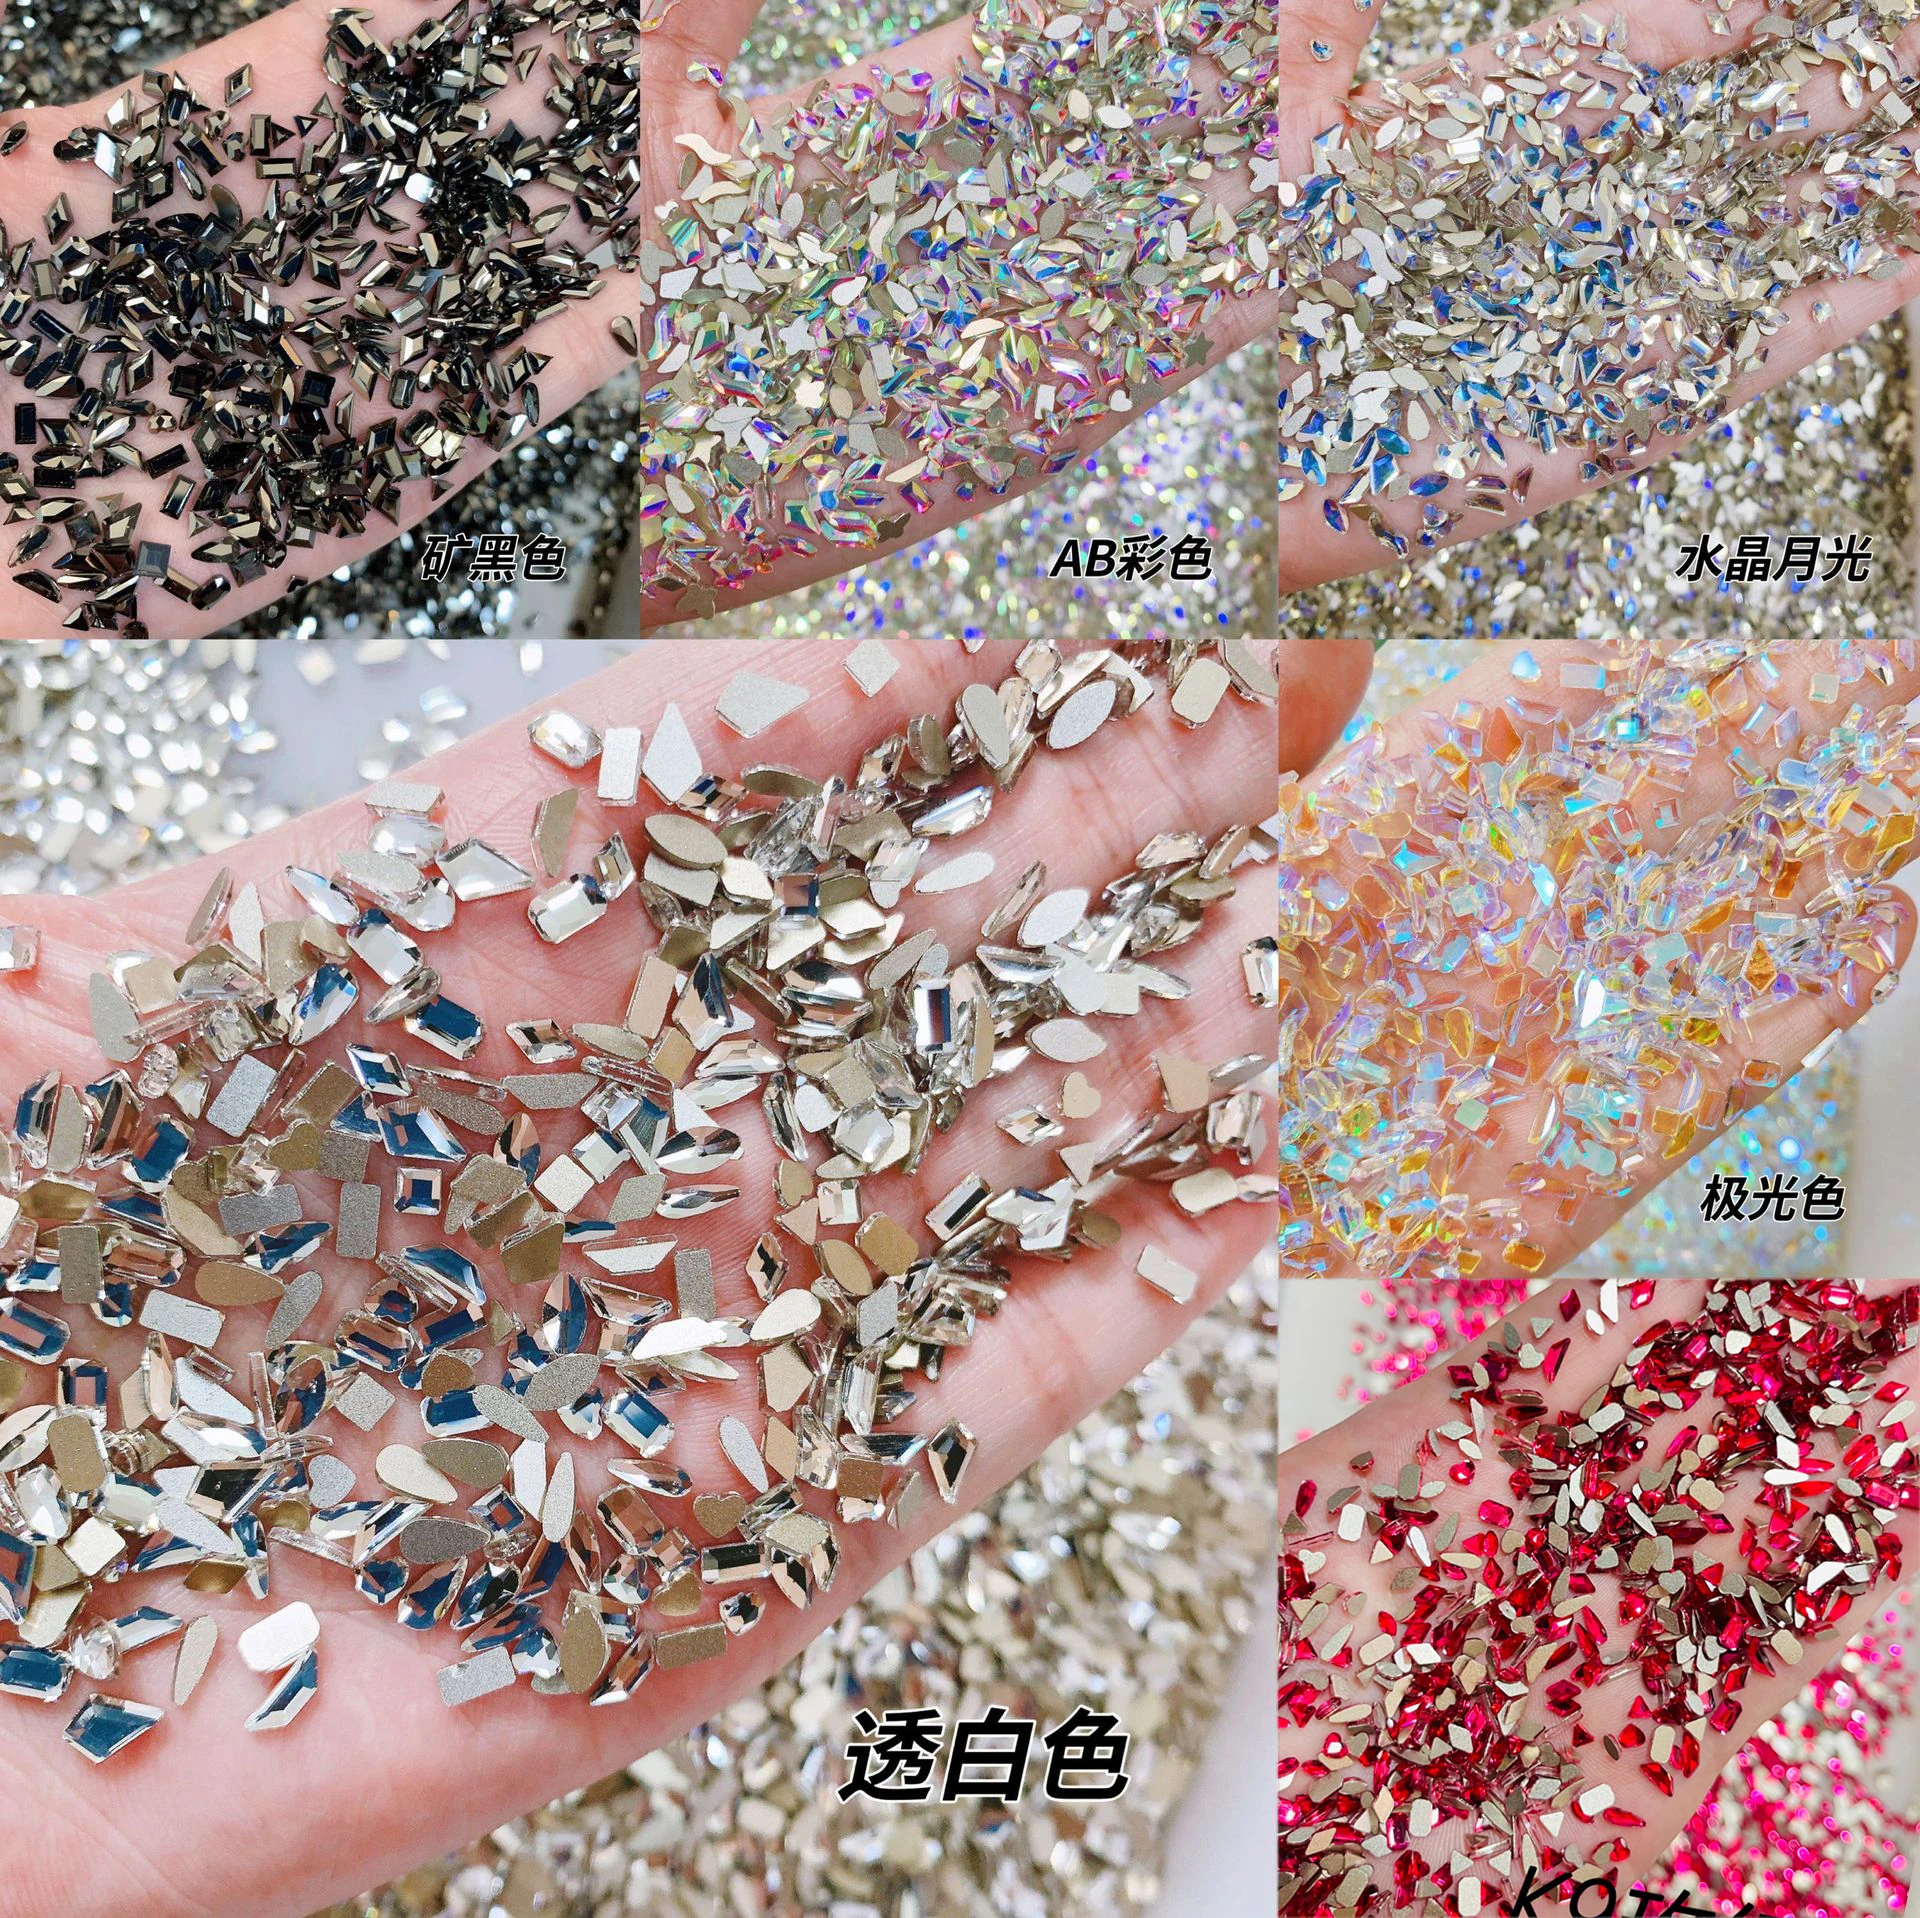 

100 шт., разнообразные кристаллы AB для украшения ногтей